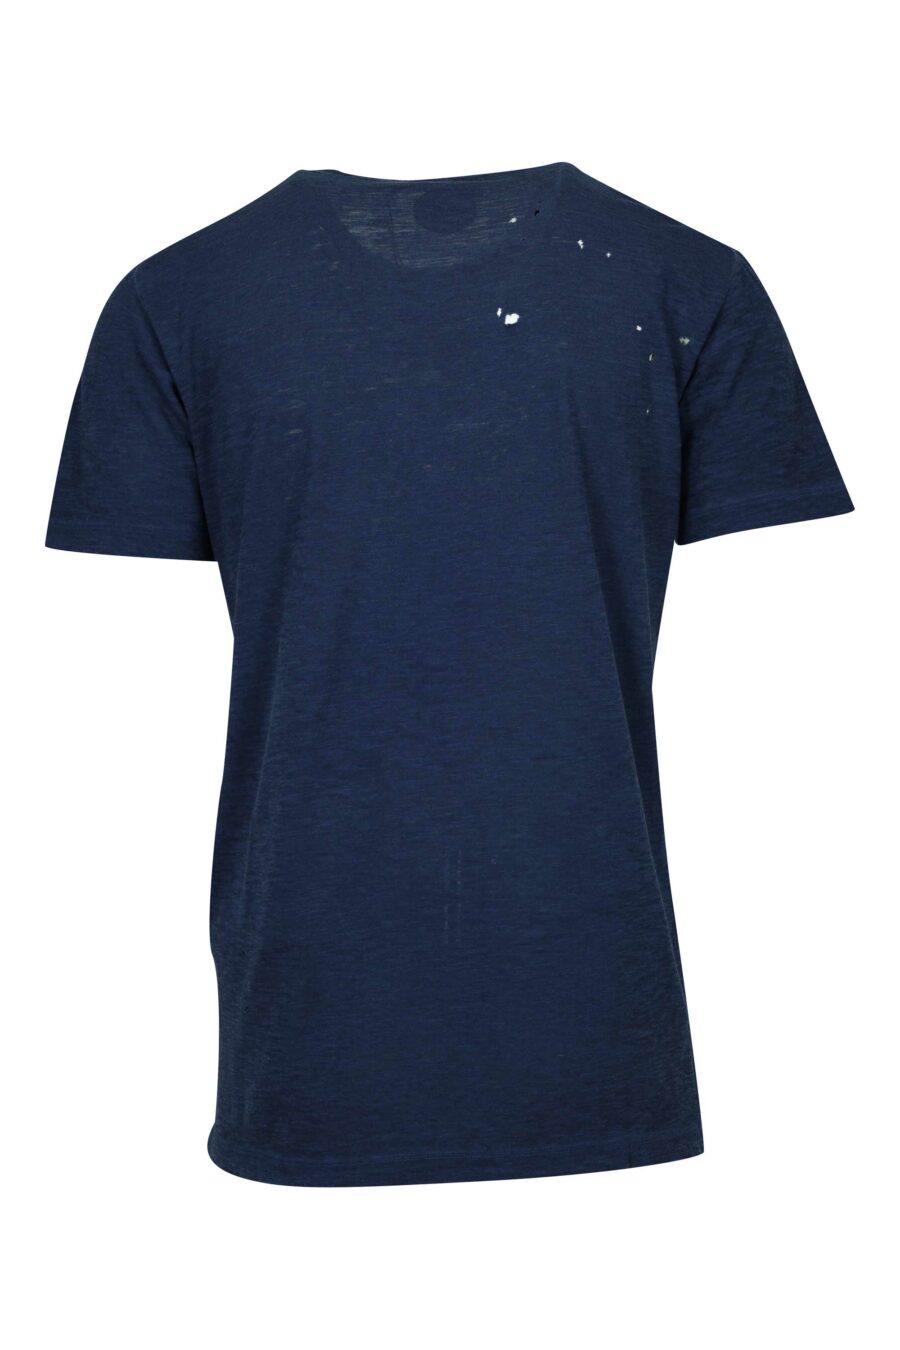 Camiseta azul oscura con minilogo "milano" - 8054148453664 1